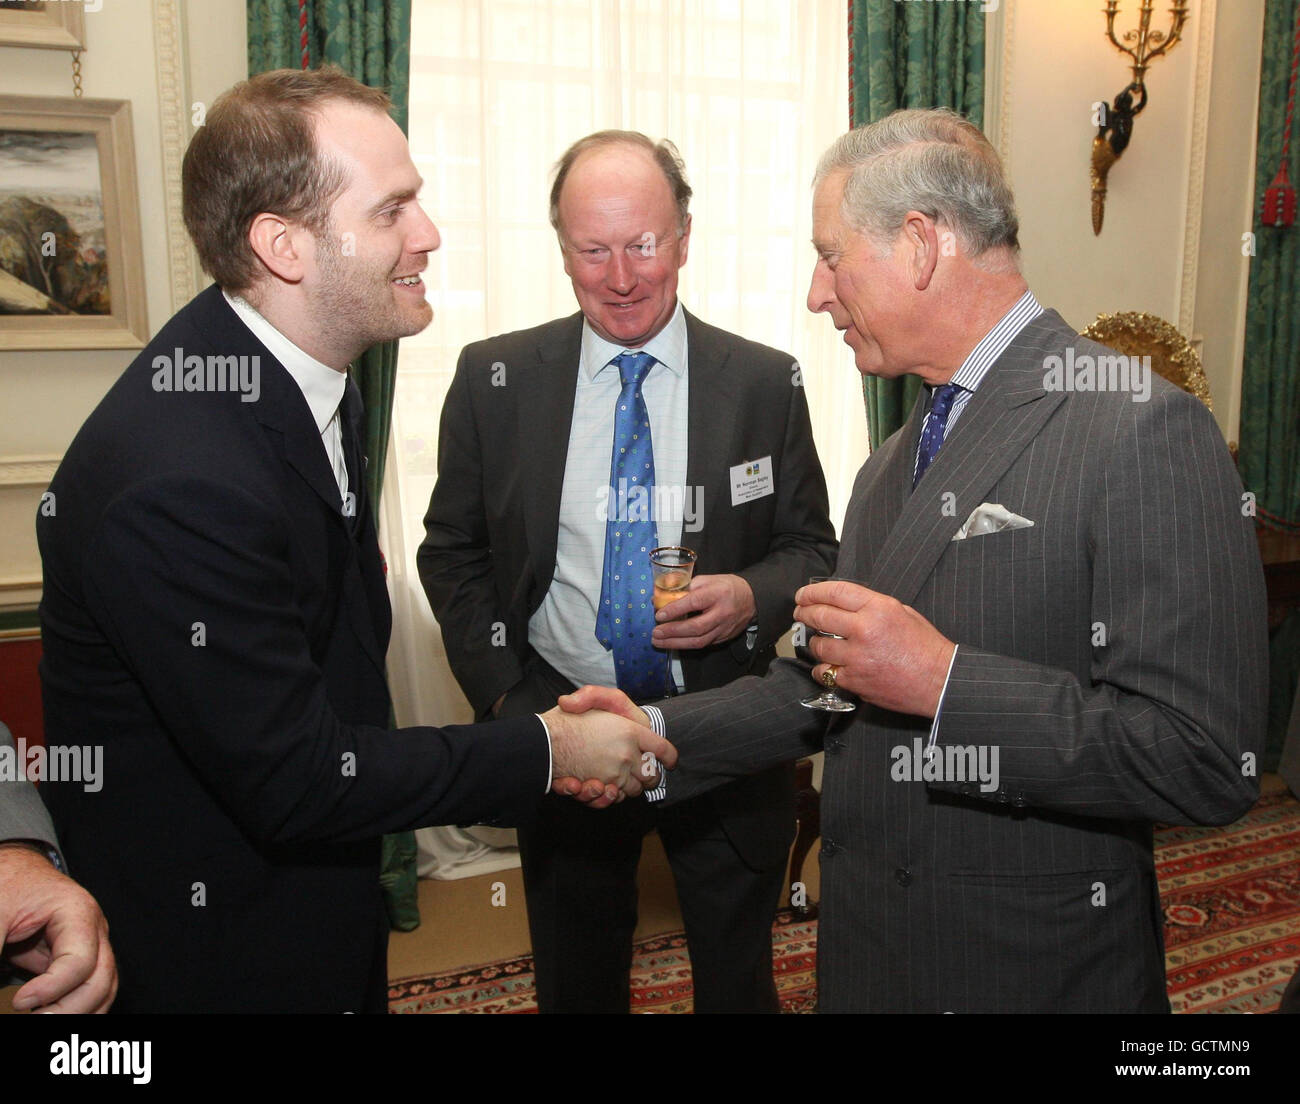 Le Prince de Galles s'adresse au chef Bryn Williams (à gauche) et au directeur de l'Association des fournisseurs indépendants de viandes Norman Bagley (à droite) lors d'une réception pour le lancement du London Welsh Lamb Club, à Clarence House, dans le centre de Londres. Banque D'Images